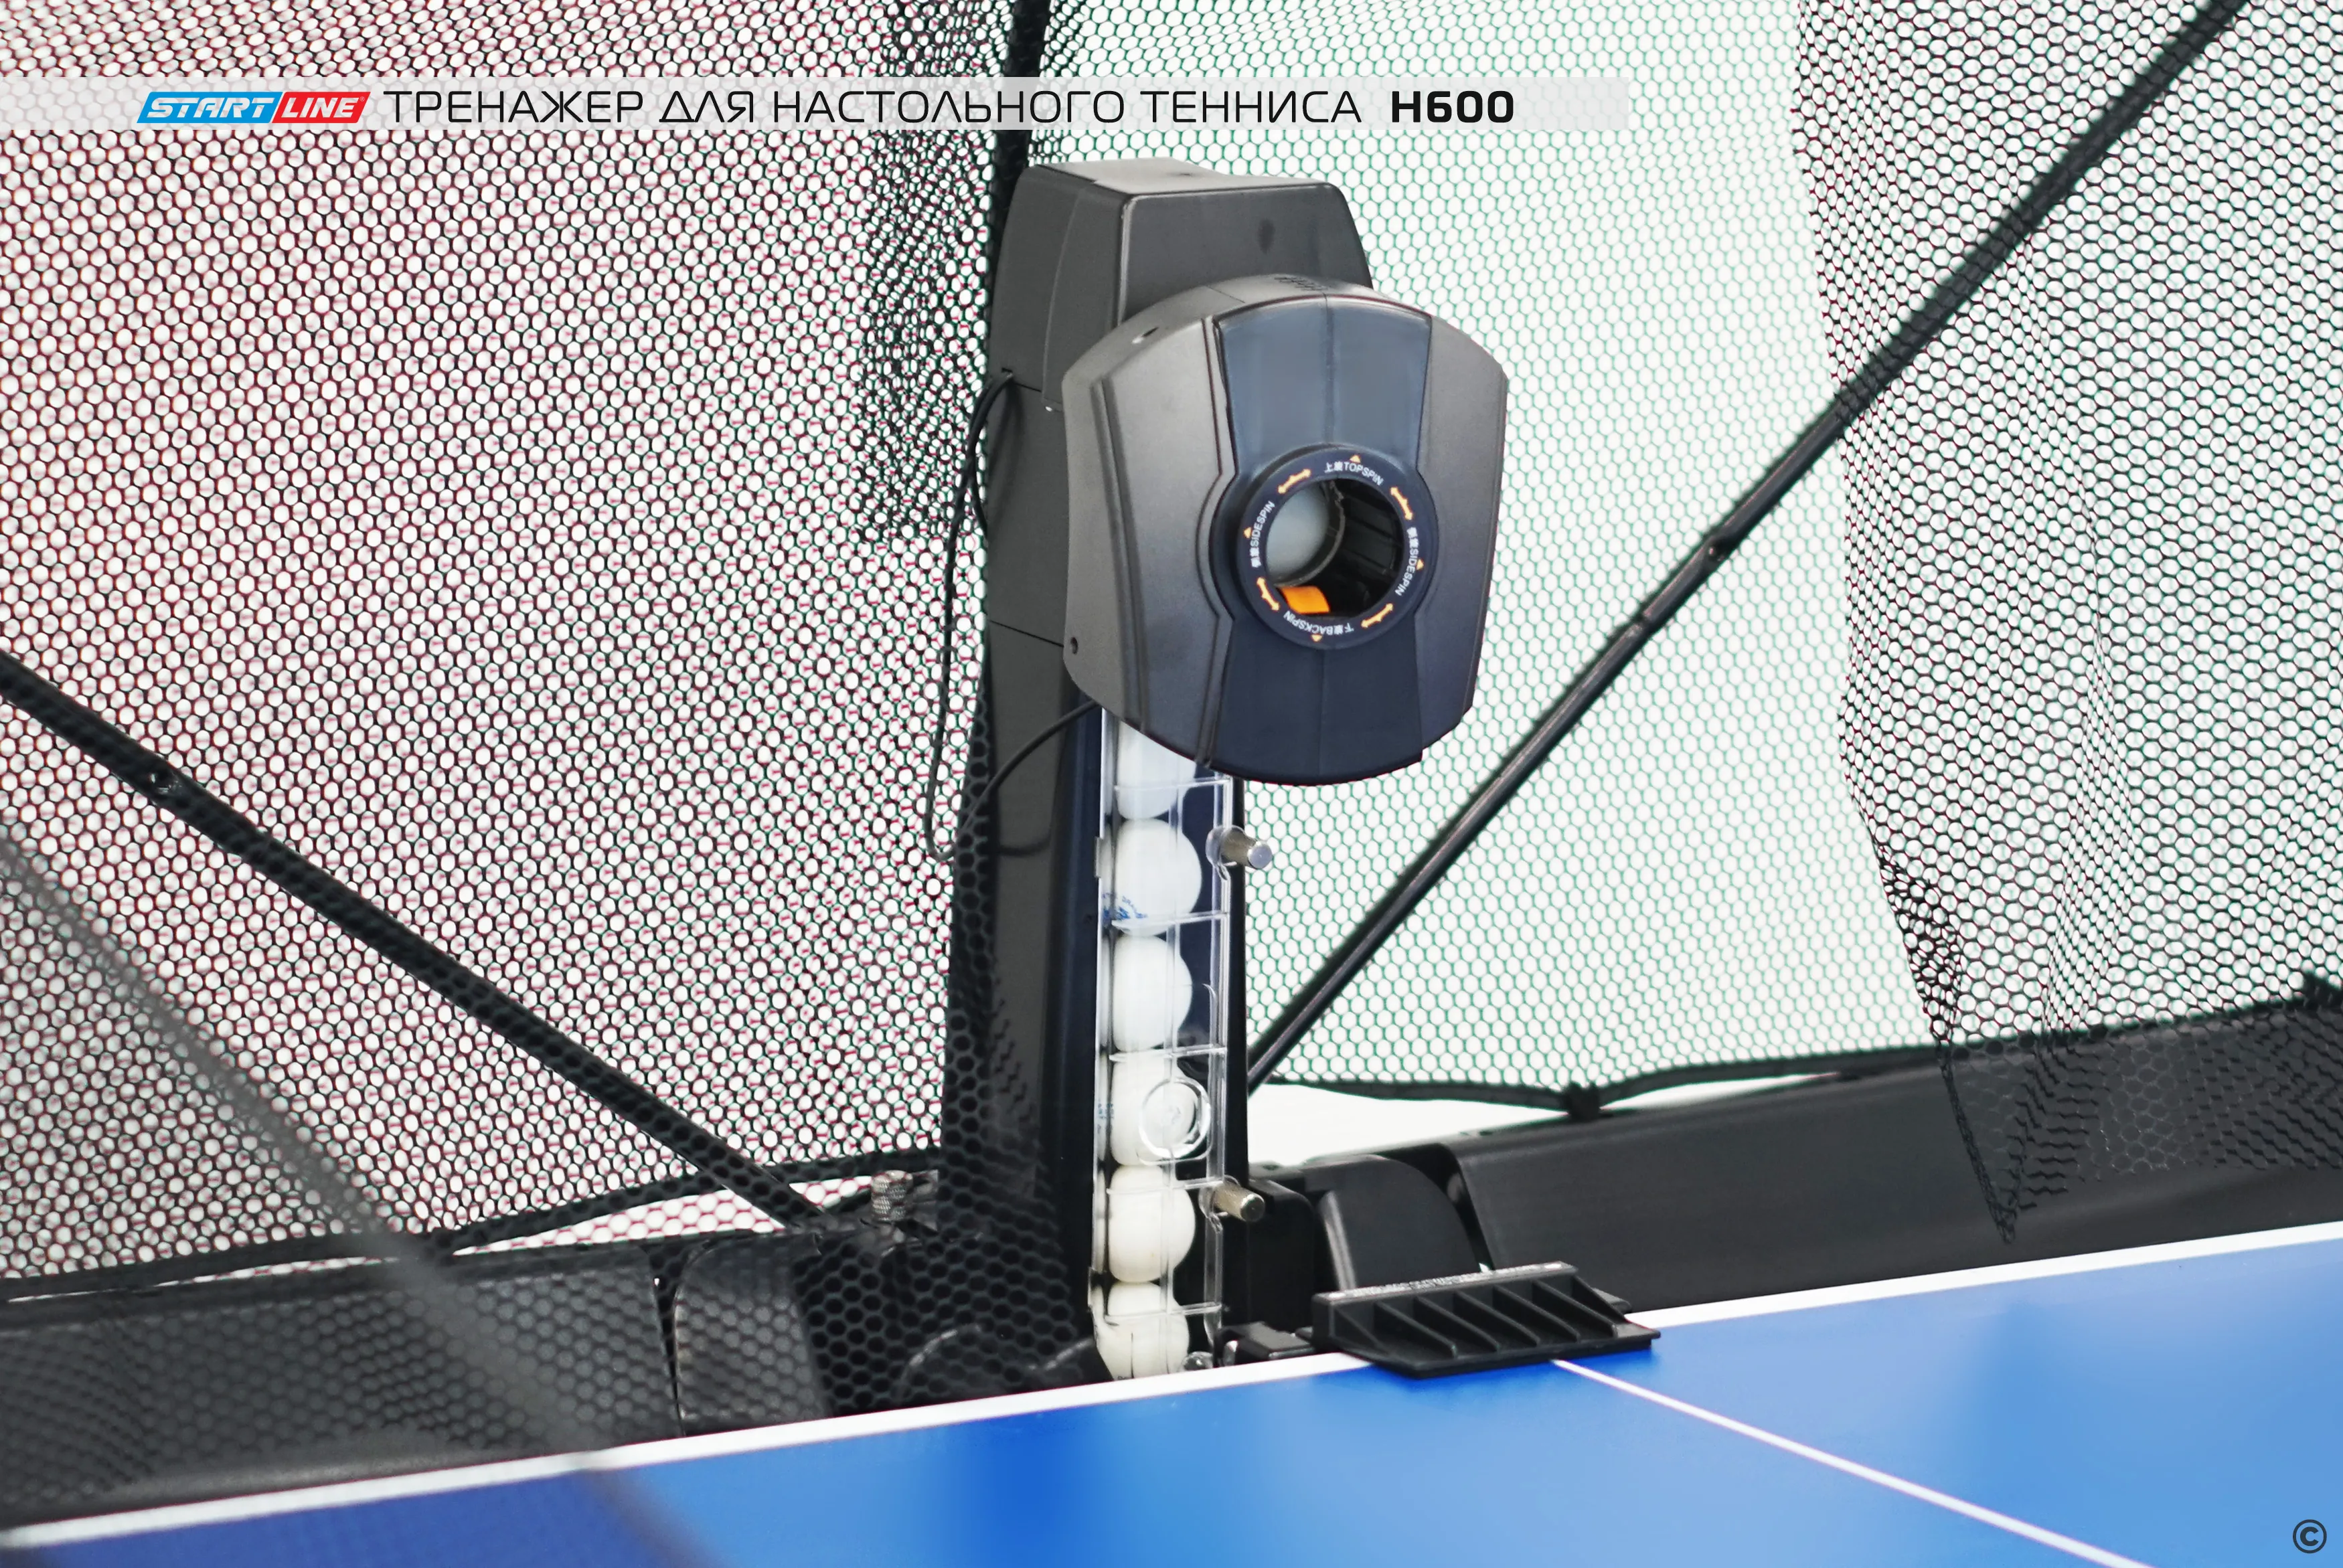 Тренажер для настольного тенниса H600 — купить у производителя –  производитель Start Line